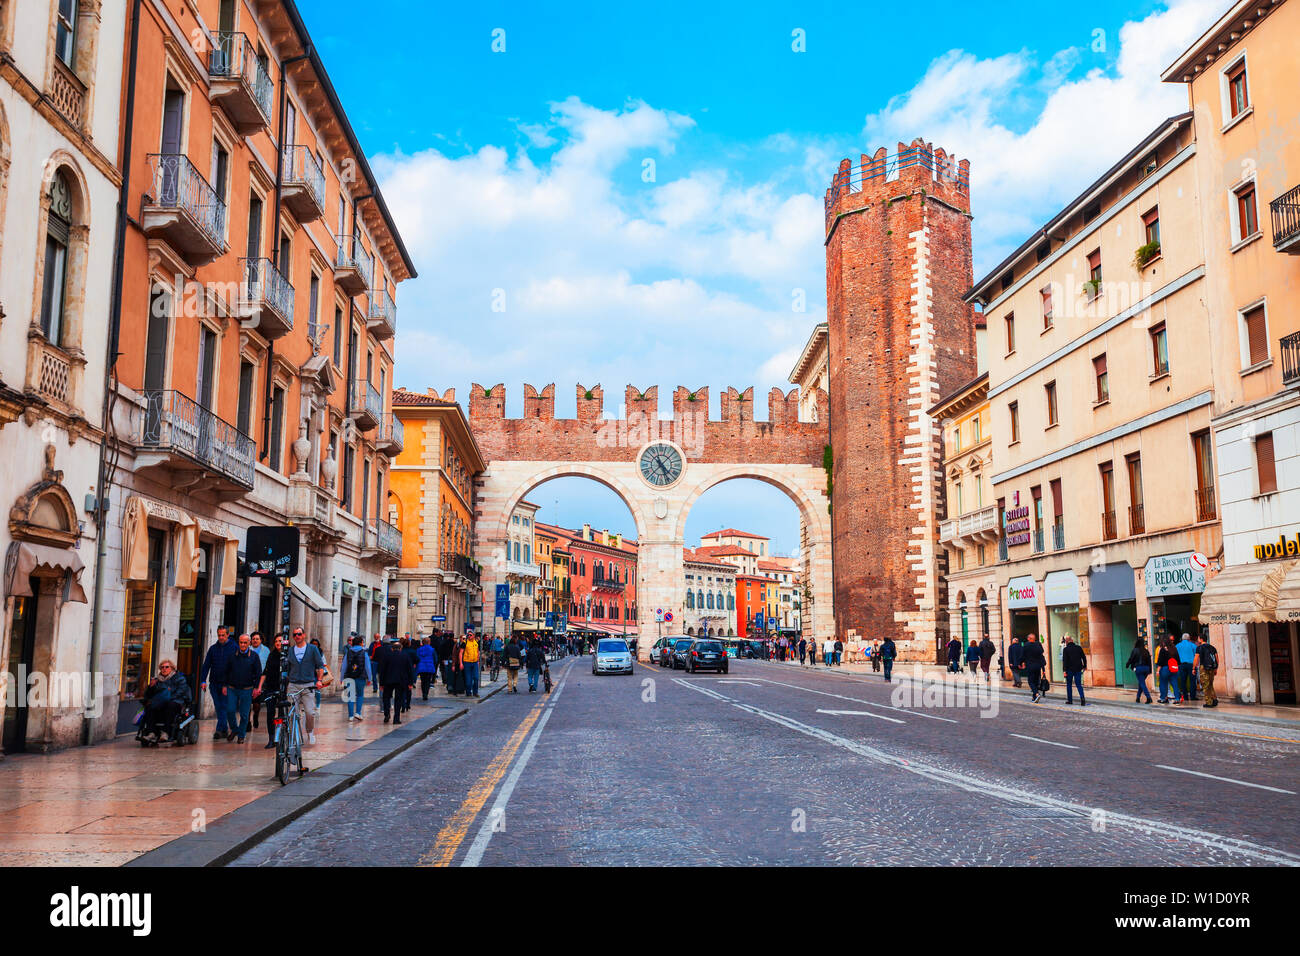 VERONA, ITALY - APRIL 16, 2019: Portoni della Bra city Gate in Verona city on the Adige river in Veneto region in Italy Stock Photo